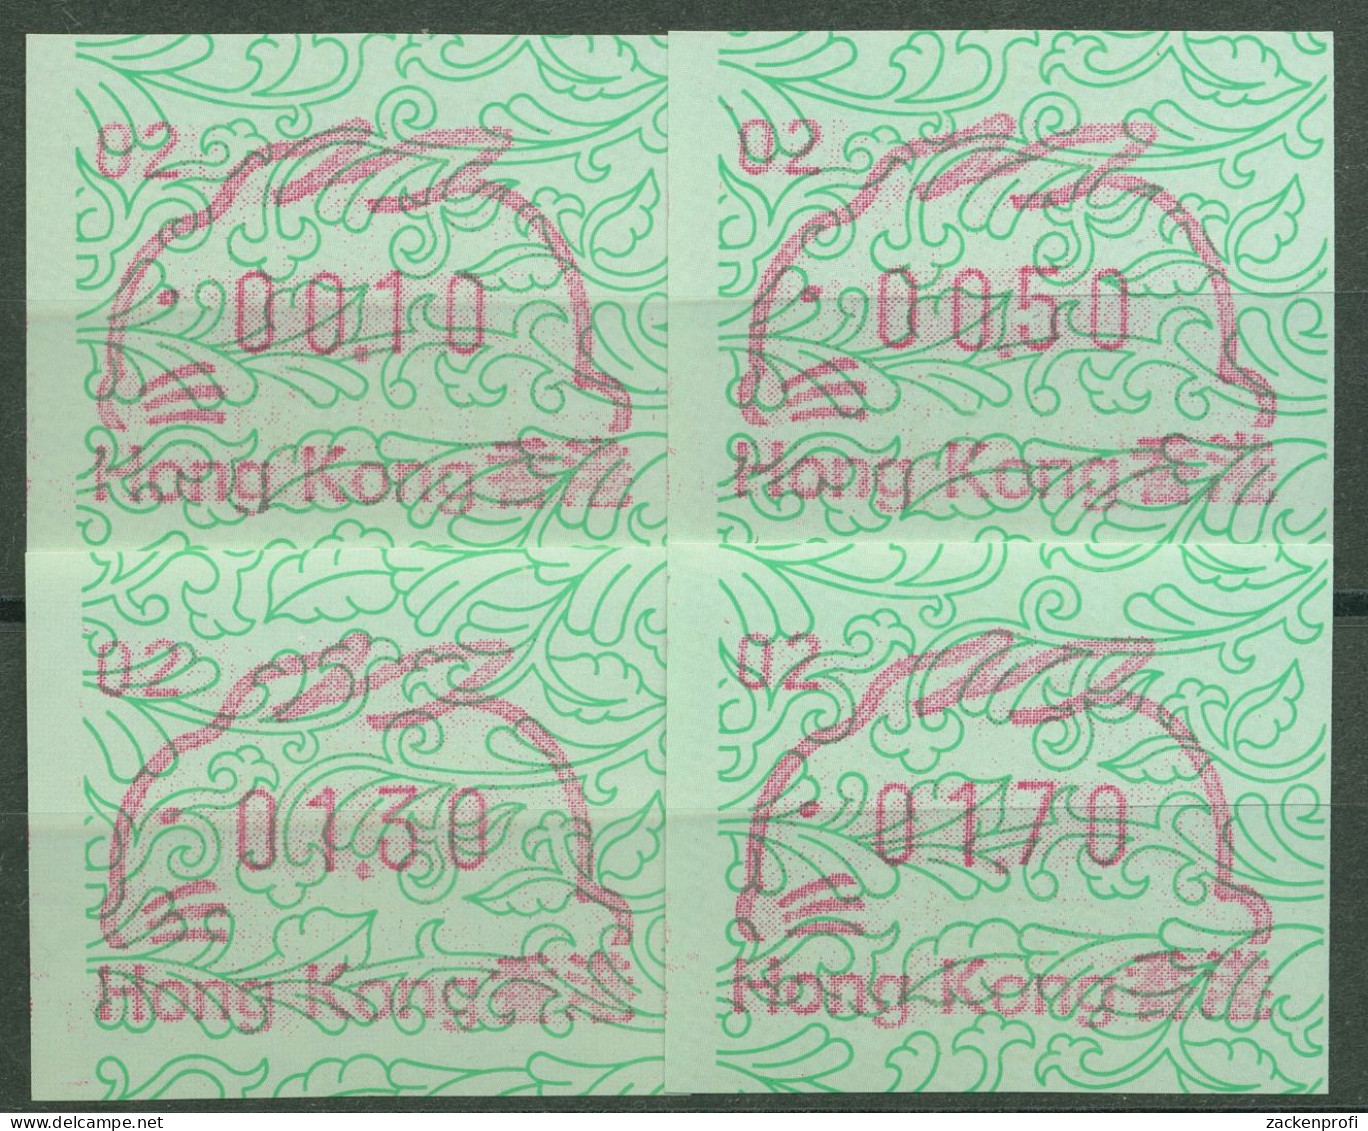 Hongkong 1987 ATM Jahr Des Hasen Satz 0,10/0,50/1,30/1,70 ATM 2c S1.2 Postfrisch - Automaten